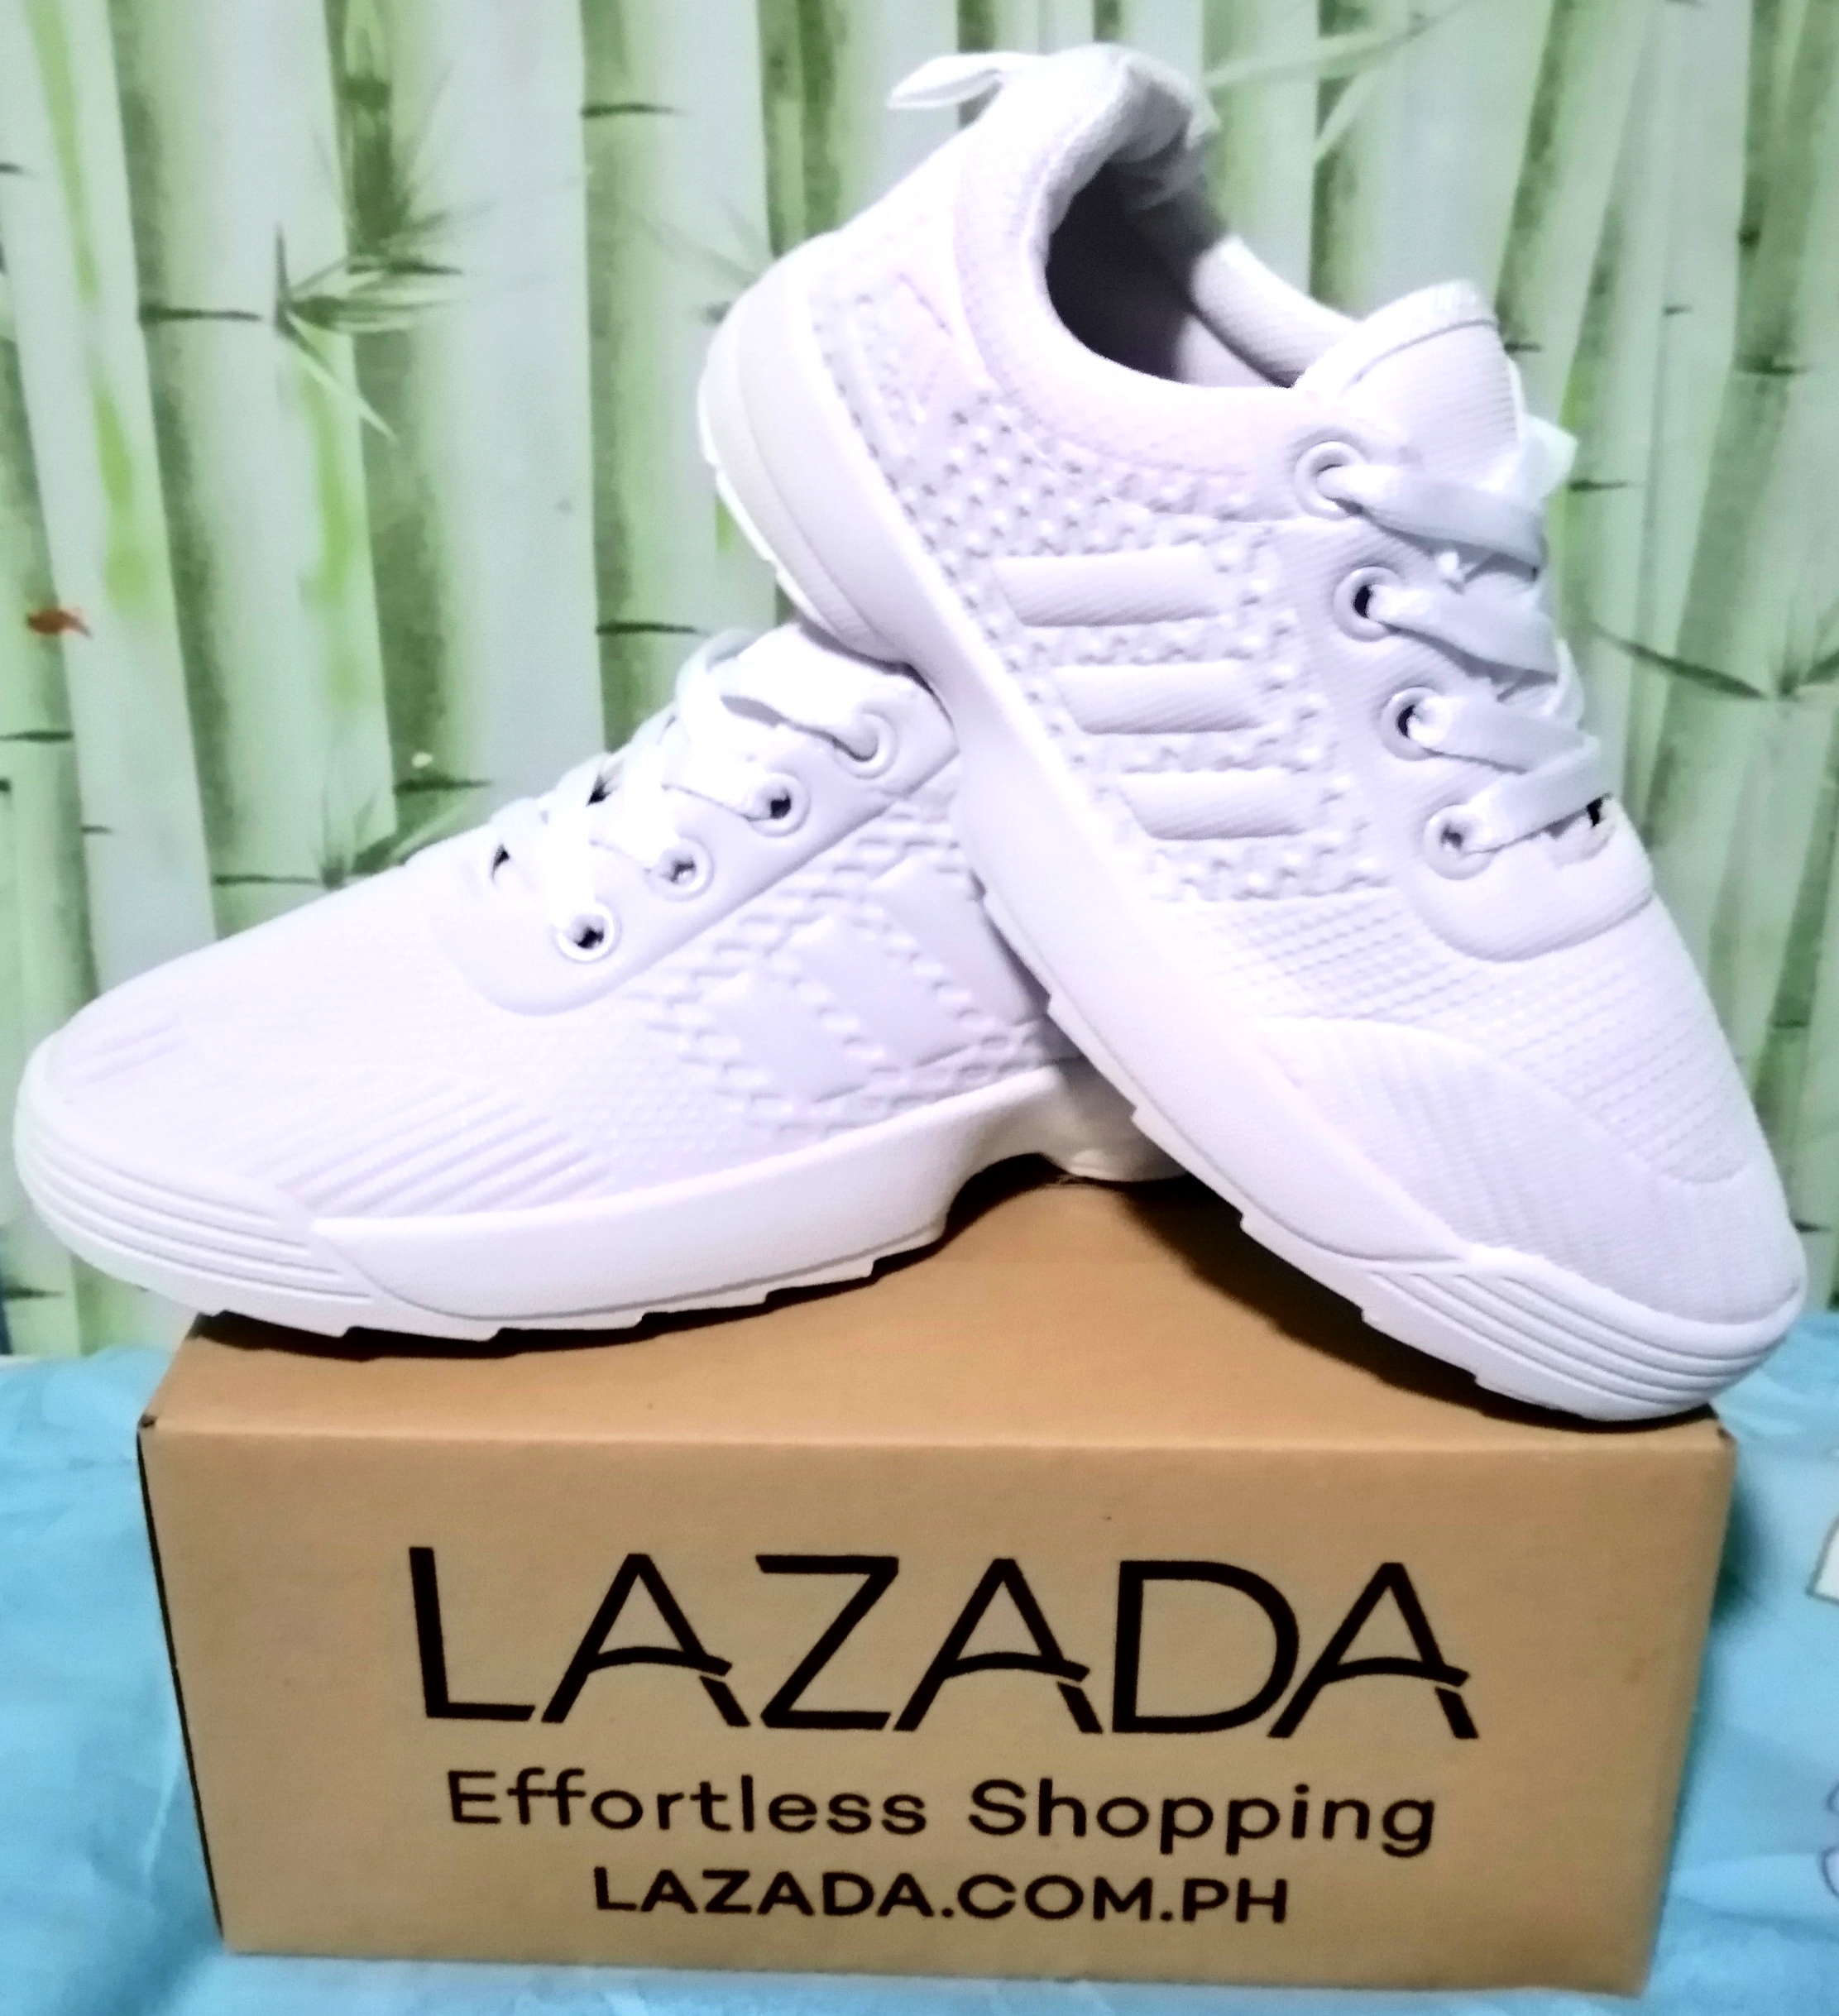 lazada shopping shoes